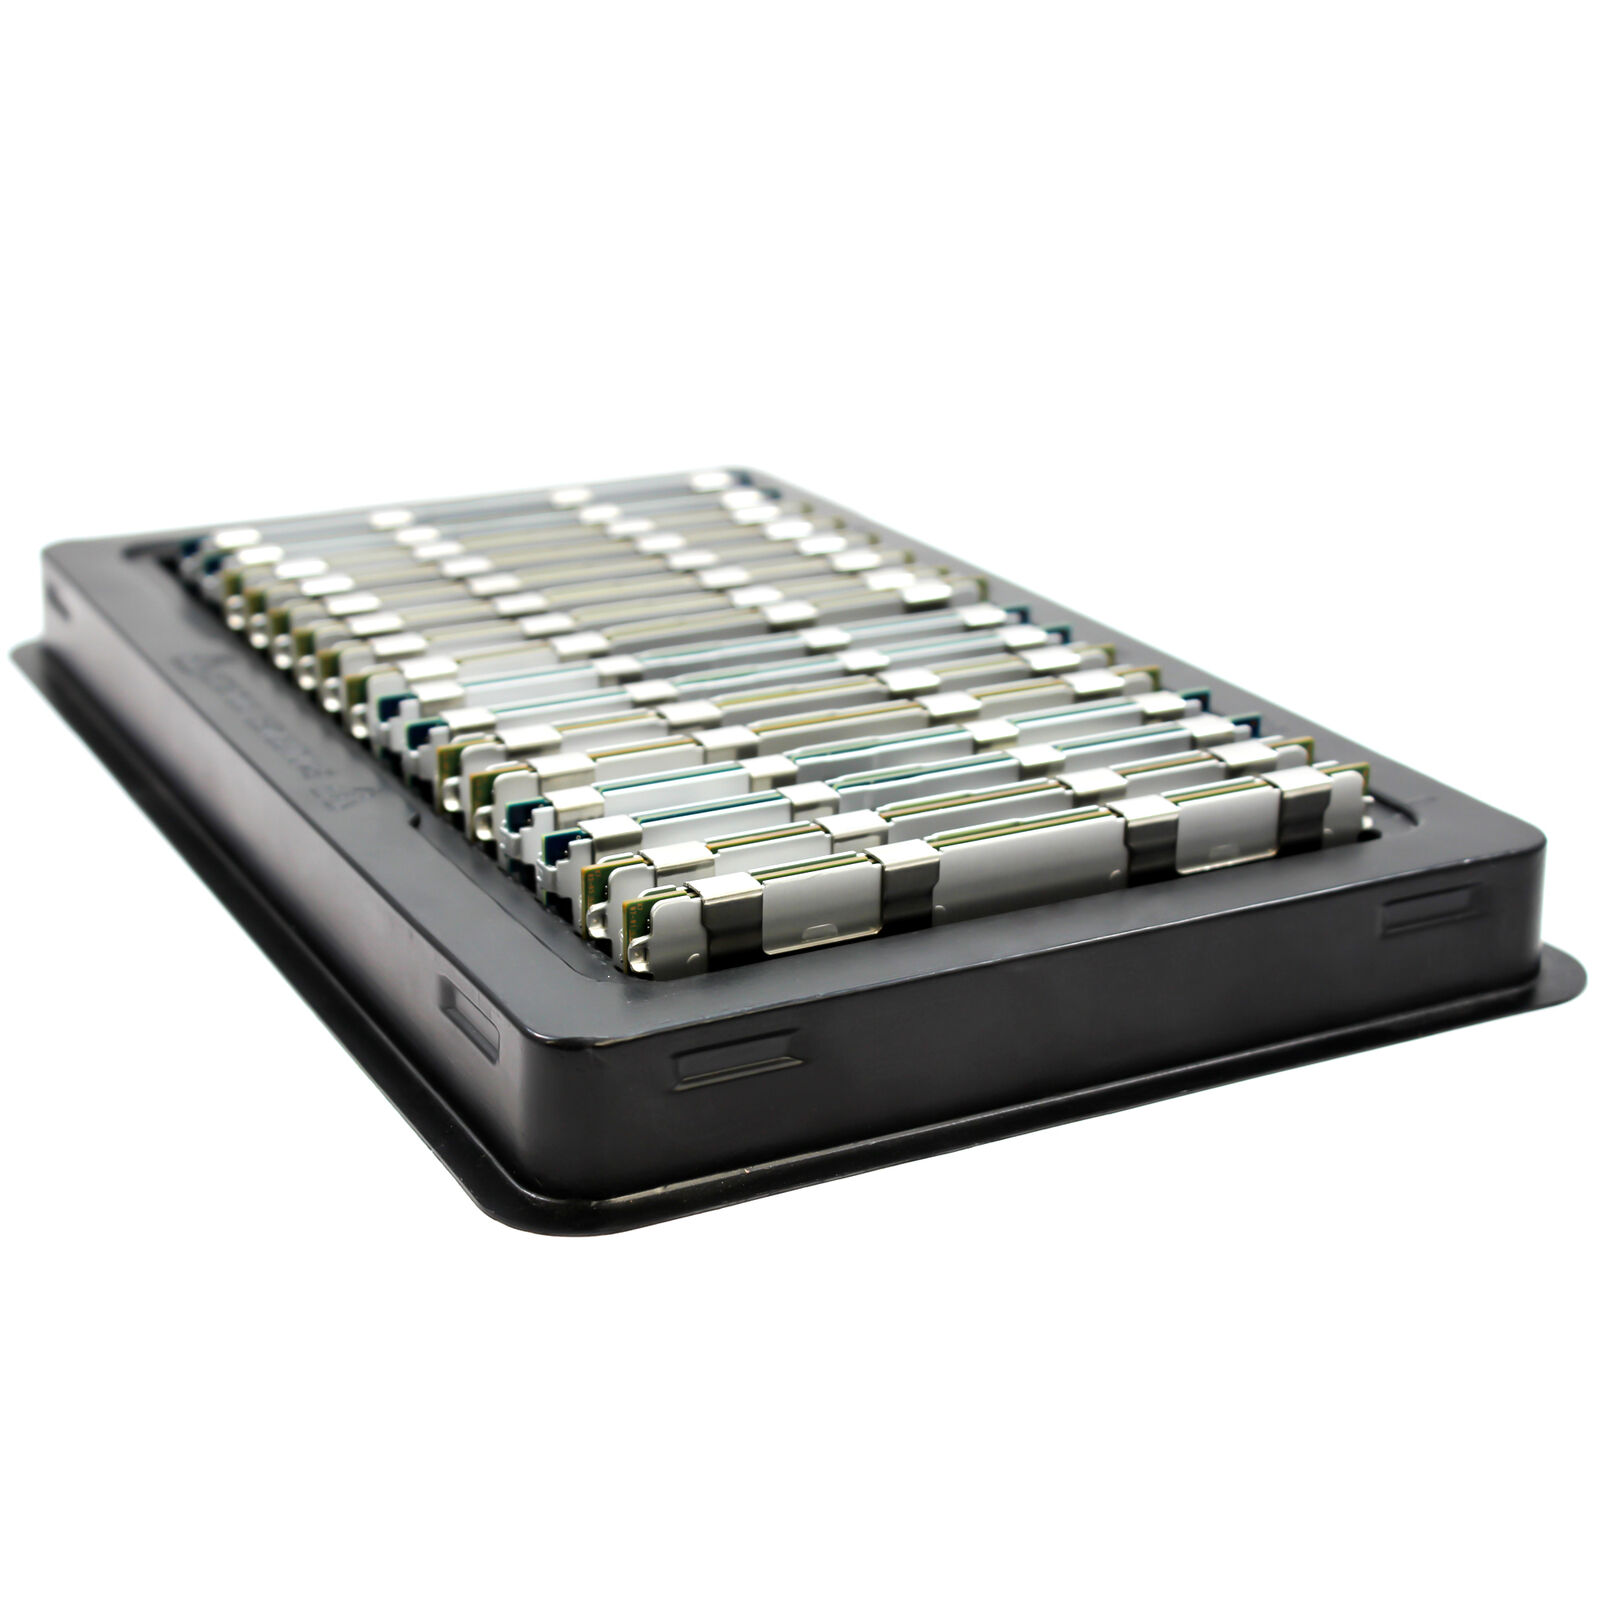 192GB (12 x 16GB) Memory For Dell PowerEdge M520 M610 M610X M620 M710 M710HD